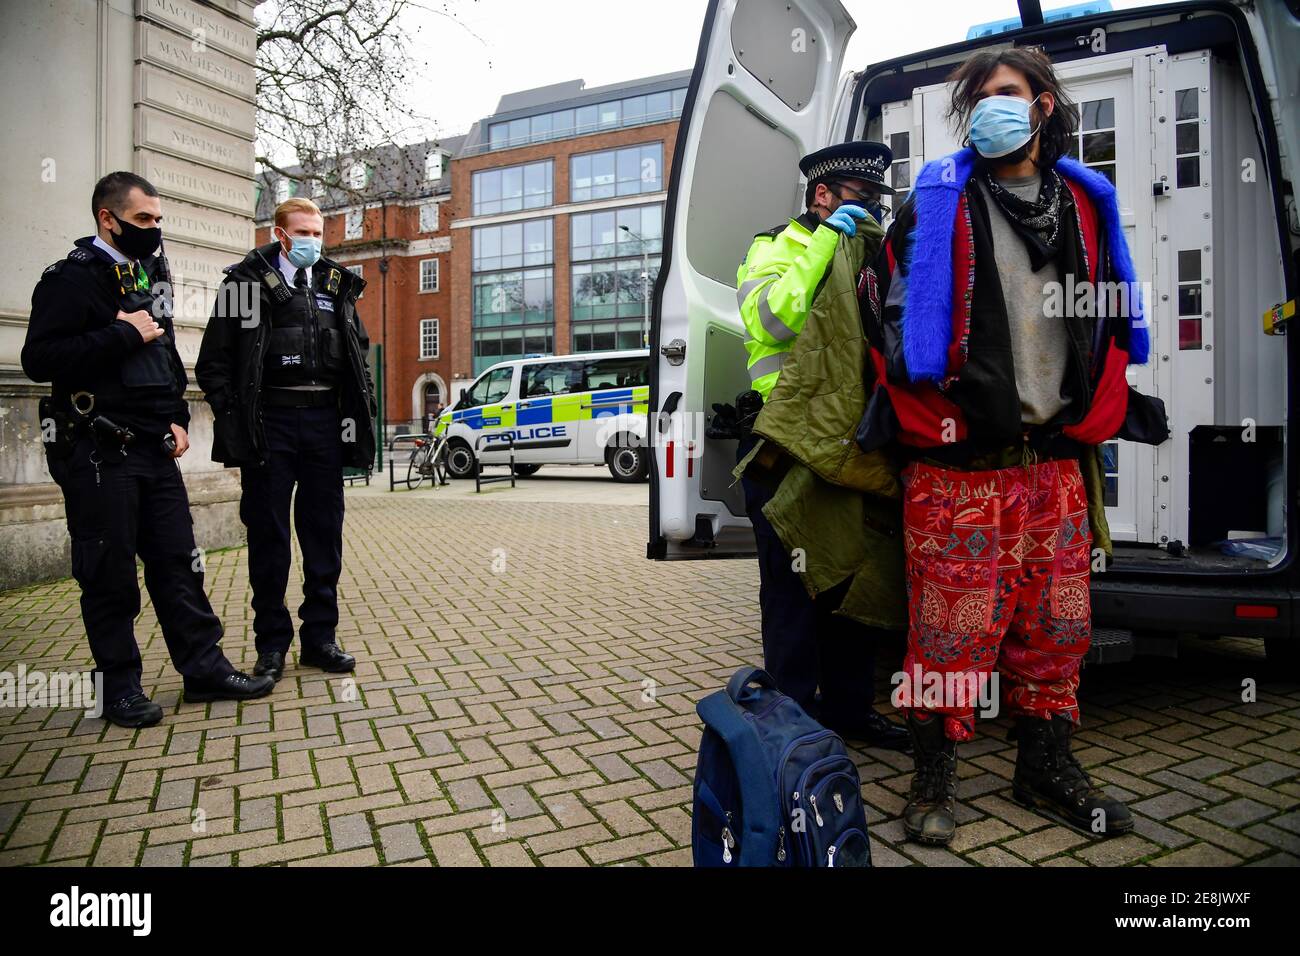 Un activista de la rebelión de extinción está detenido mientras otros manifestantes ocupan túneles bajo Euston Square Gardens para protestar contra el ferrocarril de alta velocidad HS2 en Londres, Gran Bretaña 31 de enero de 2021. REUTERS/Toby Melville Foto de stock